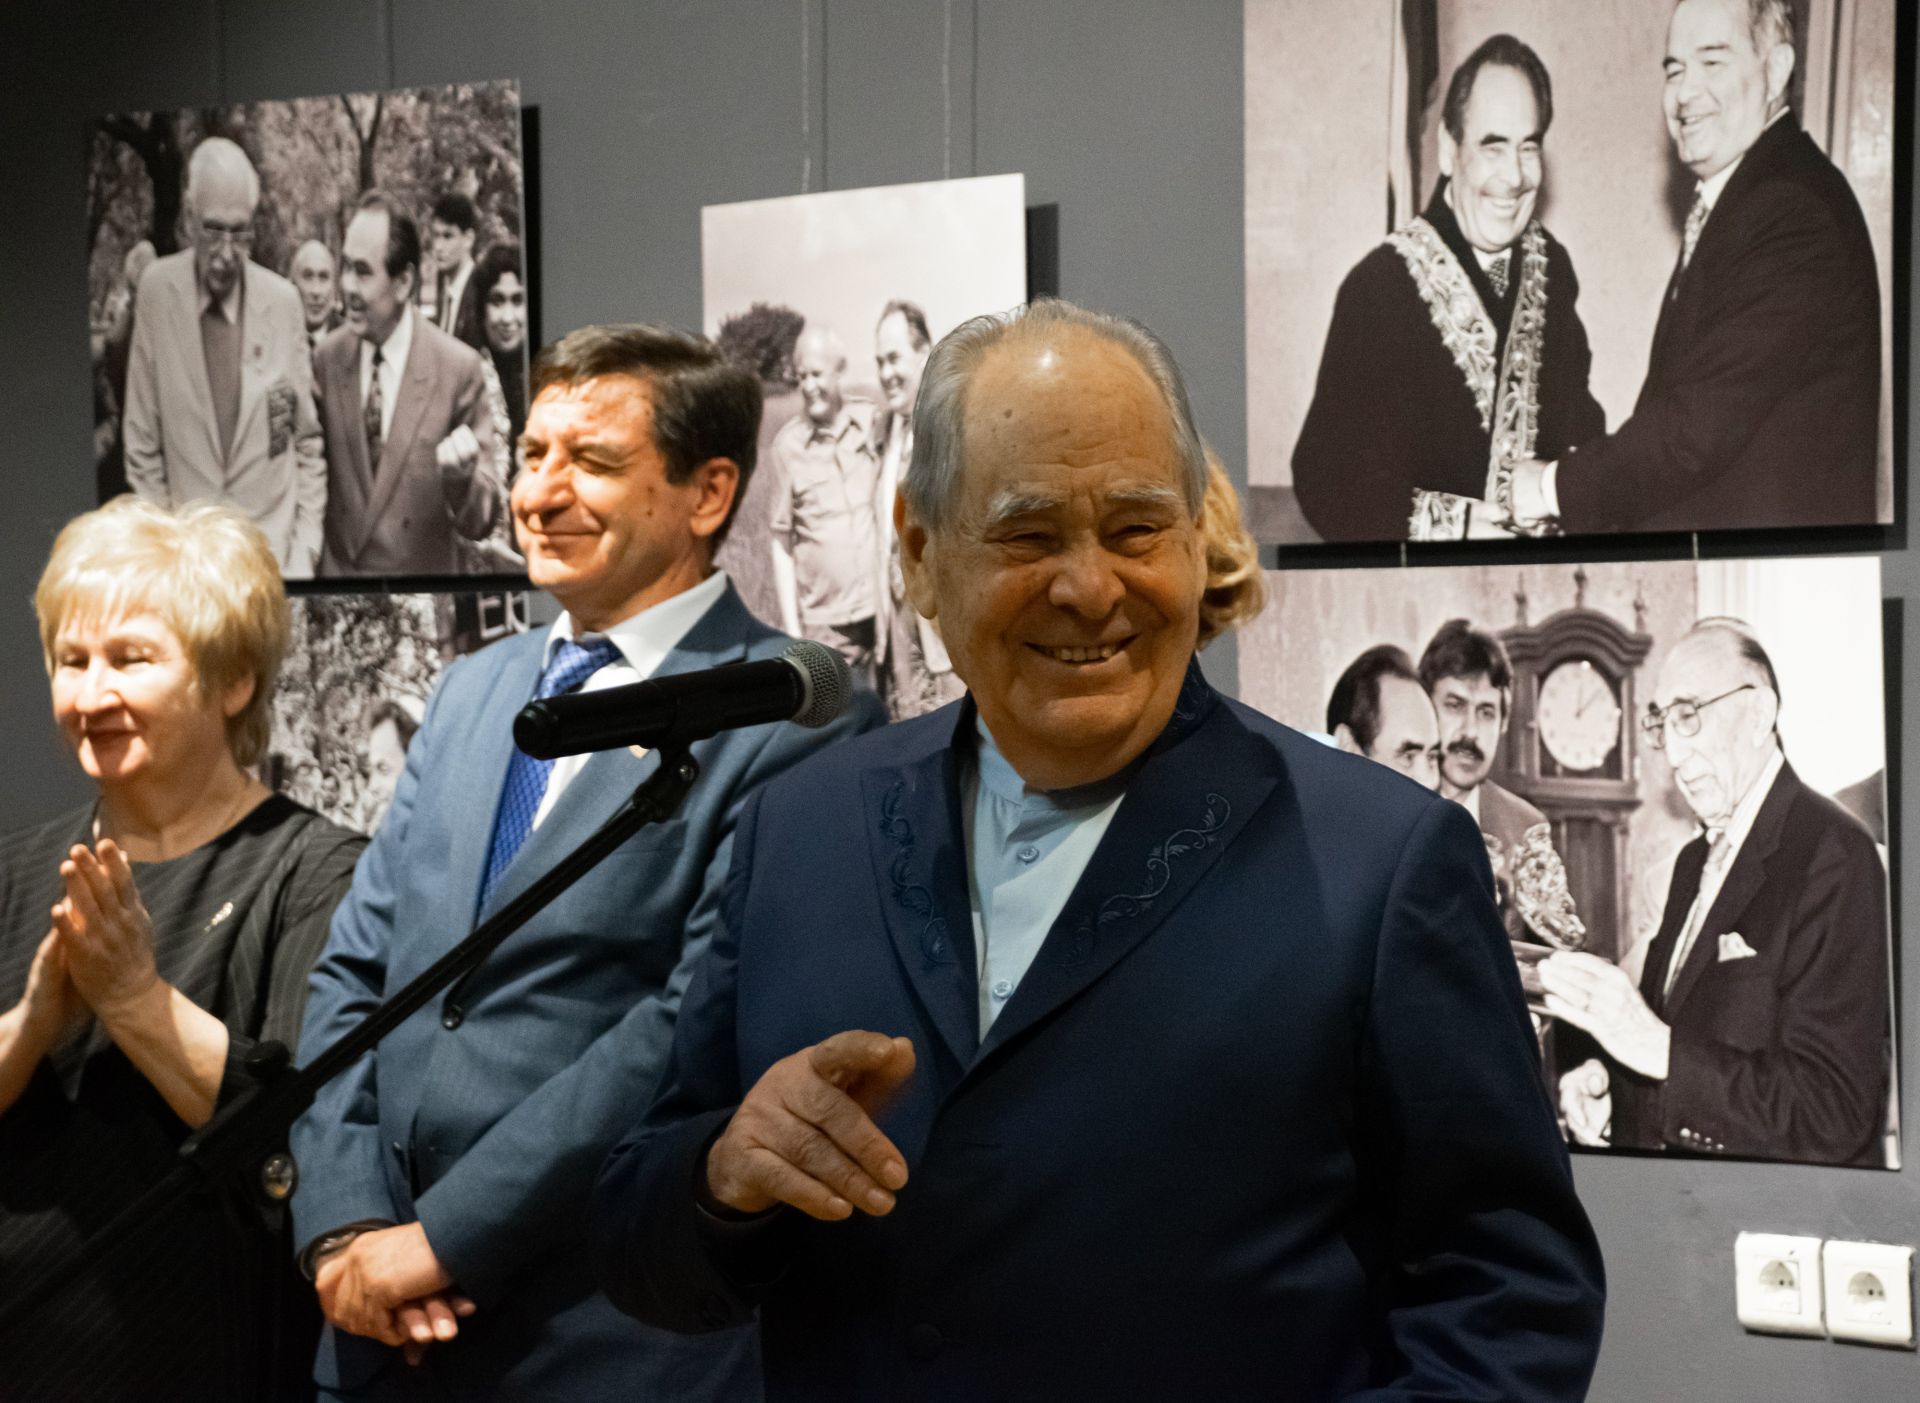 В галерее «Хазинэ» открылась выставка фотографий Михаила КОЗЛОВСКОГО «Эпоха». 24 марта талантливому фотографу исполнилось бы 70 лет